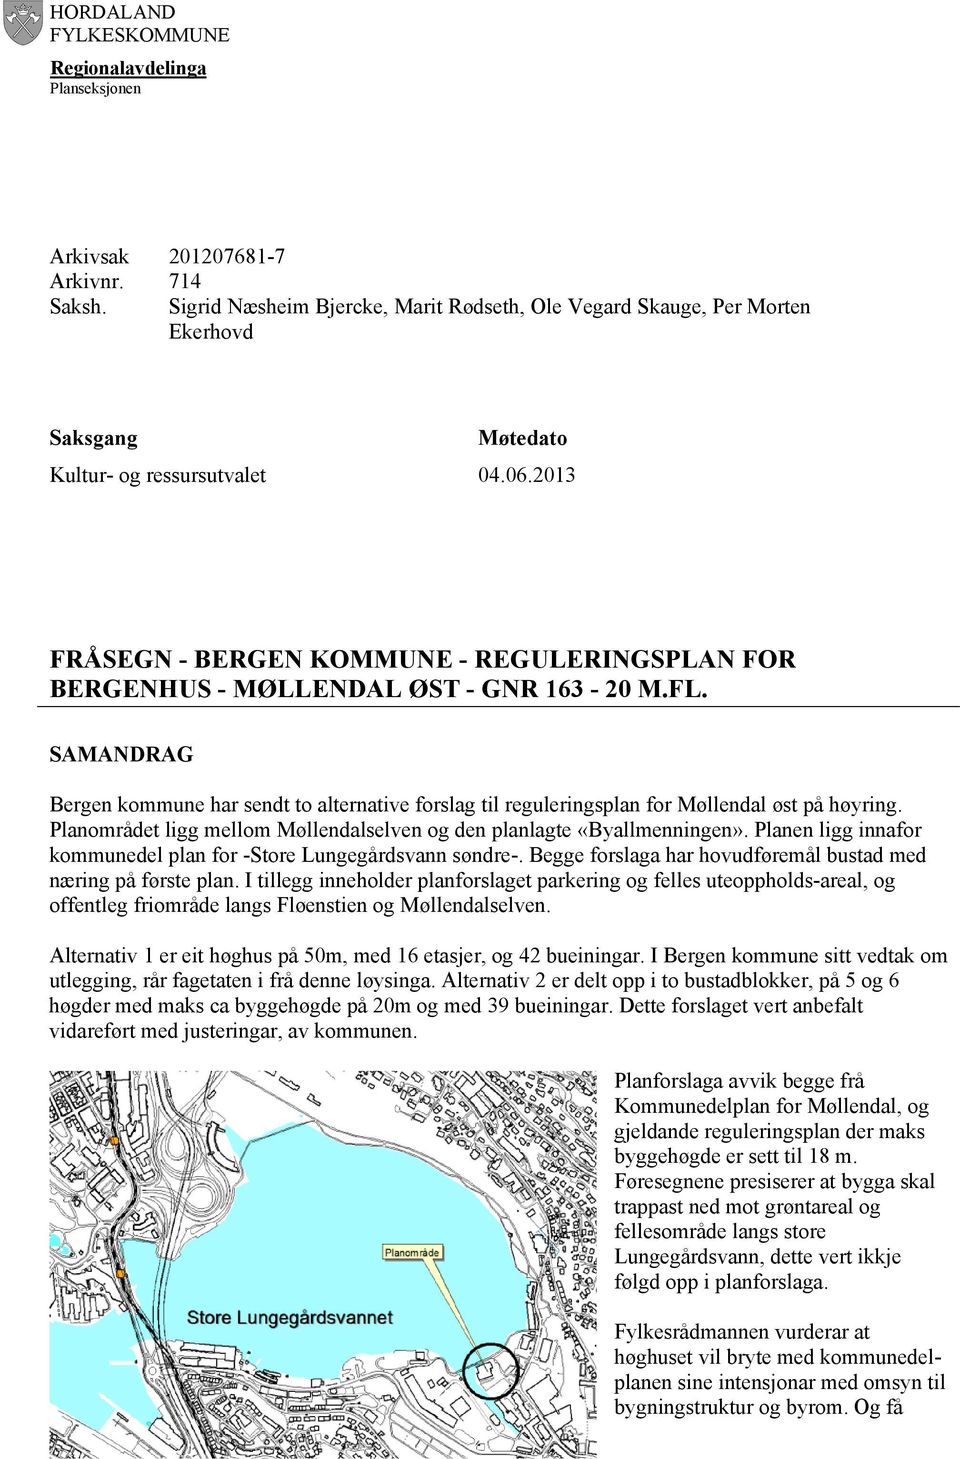 2013 FRÅSEGN - BERGEN KOMMUNE - REGULERINGSPLAN FOR BERGENHUS - MØLLENDAL ØST - GNR 163-20 M.FL.